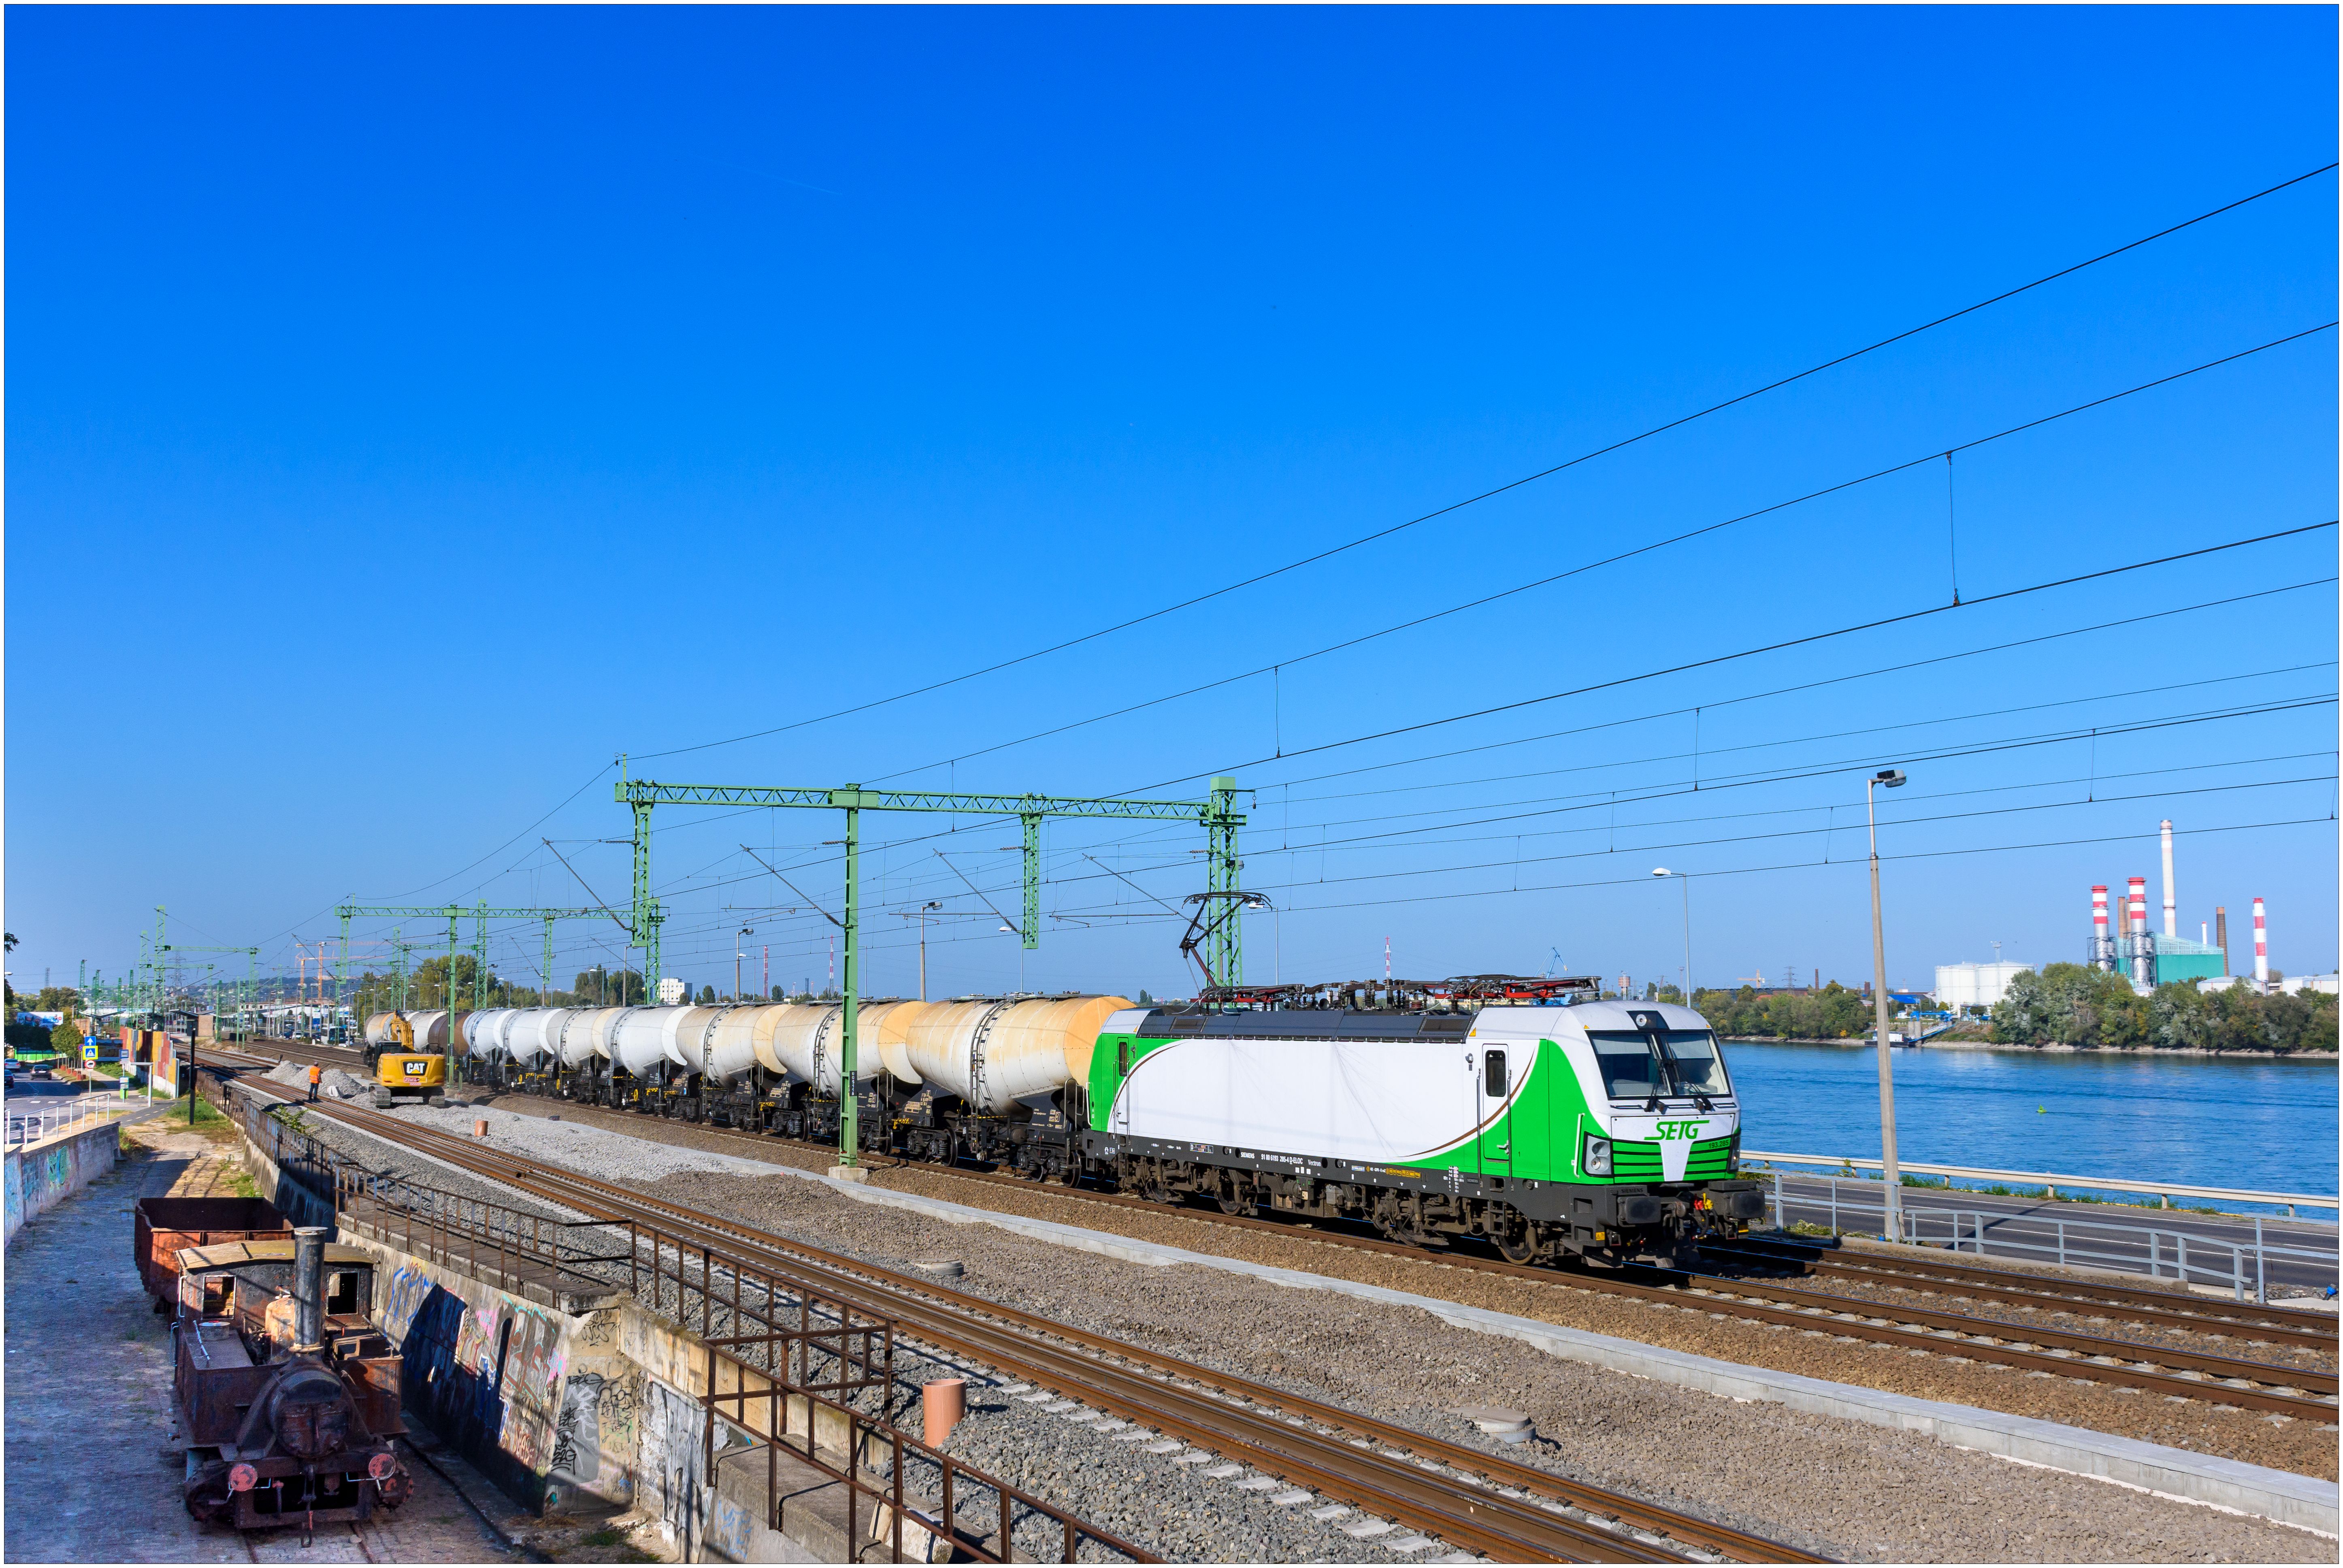 Bahnlogistik: SETG fährt mit einer Lok durch vier Länder